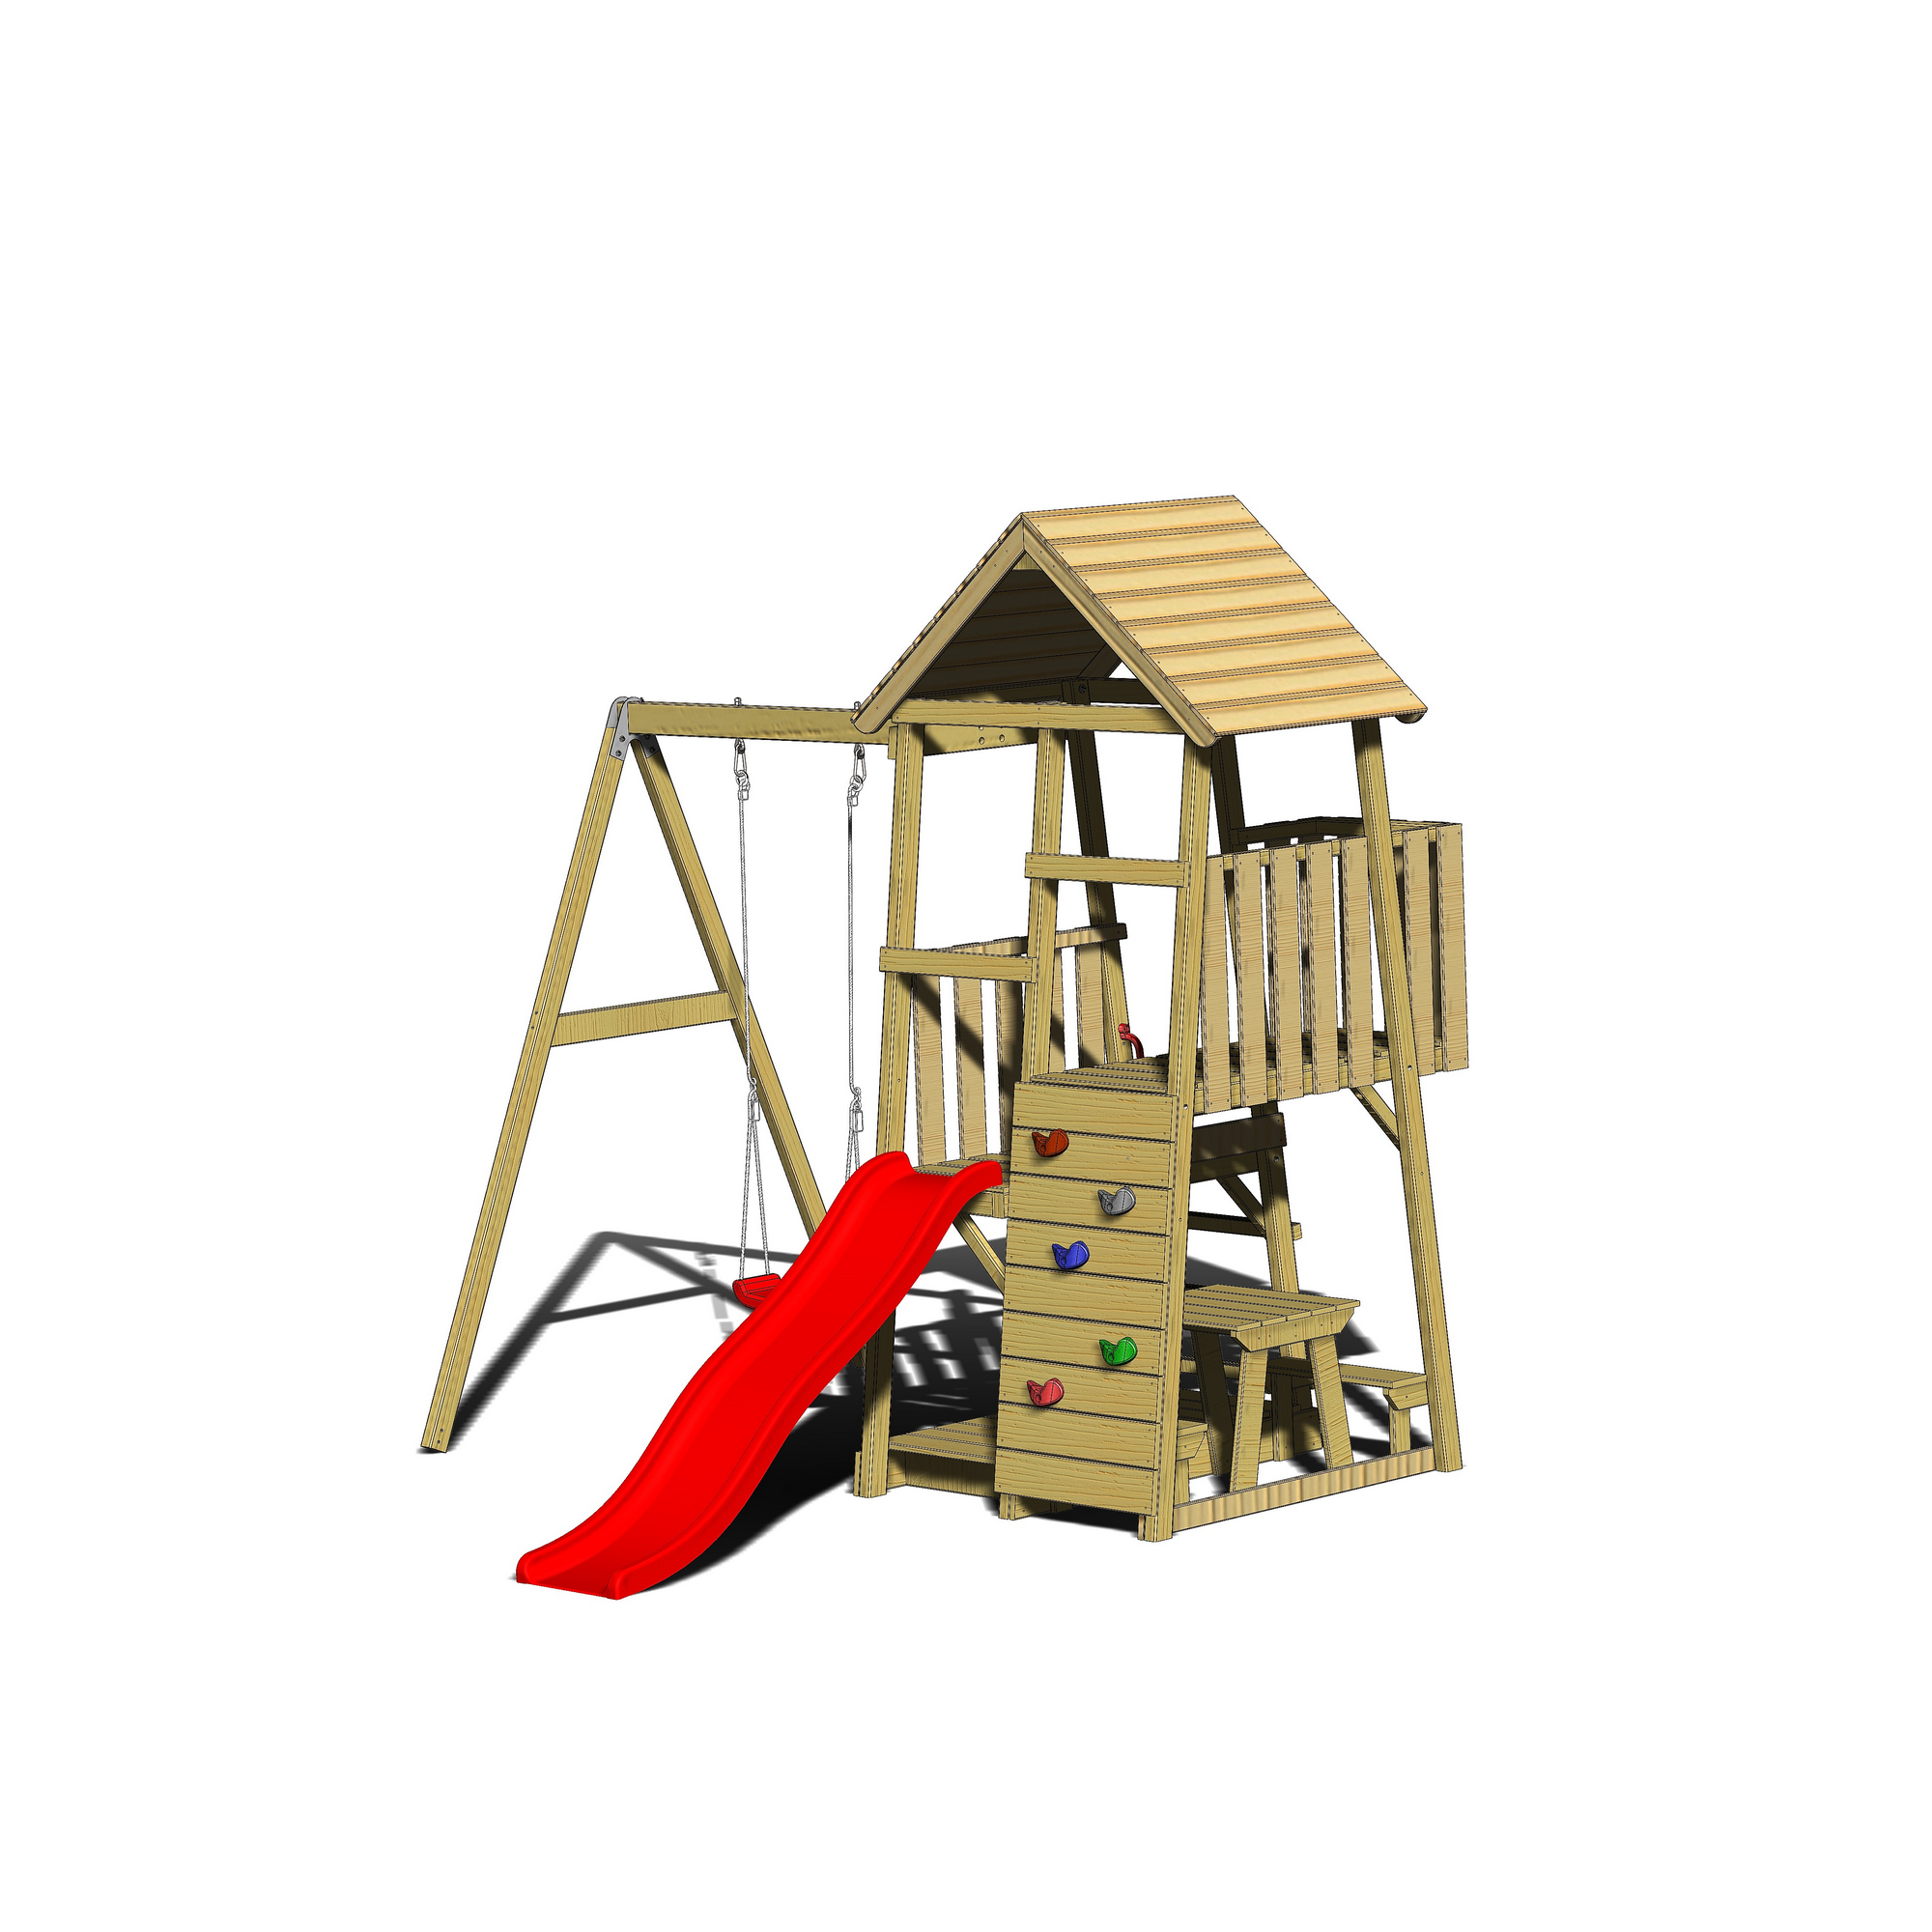 Holz-Spielturm 'Gorilla' natur Rutsche, Kletterwand, Schaukel und Picknicktisch 290 x 270 x 270 cm + product picture